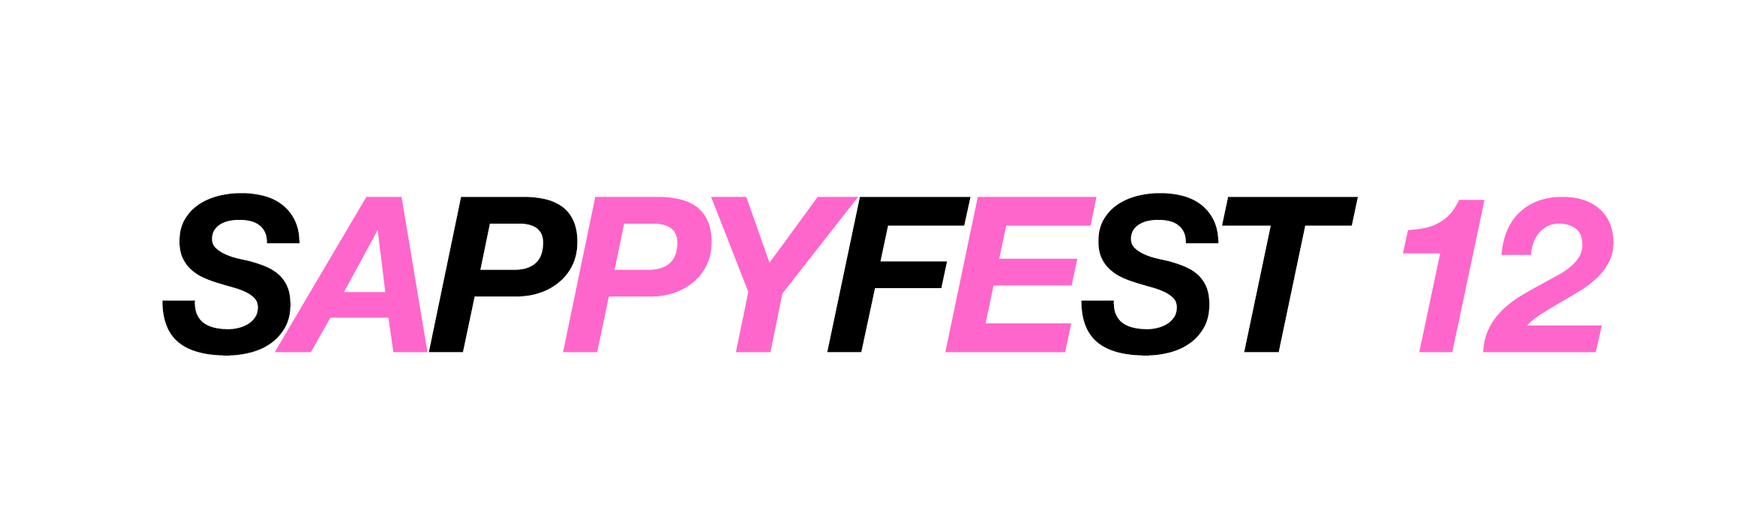 sappyfest_banner